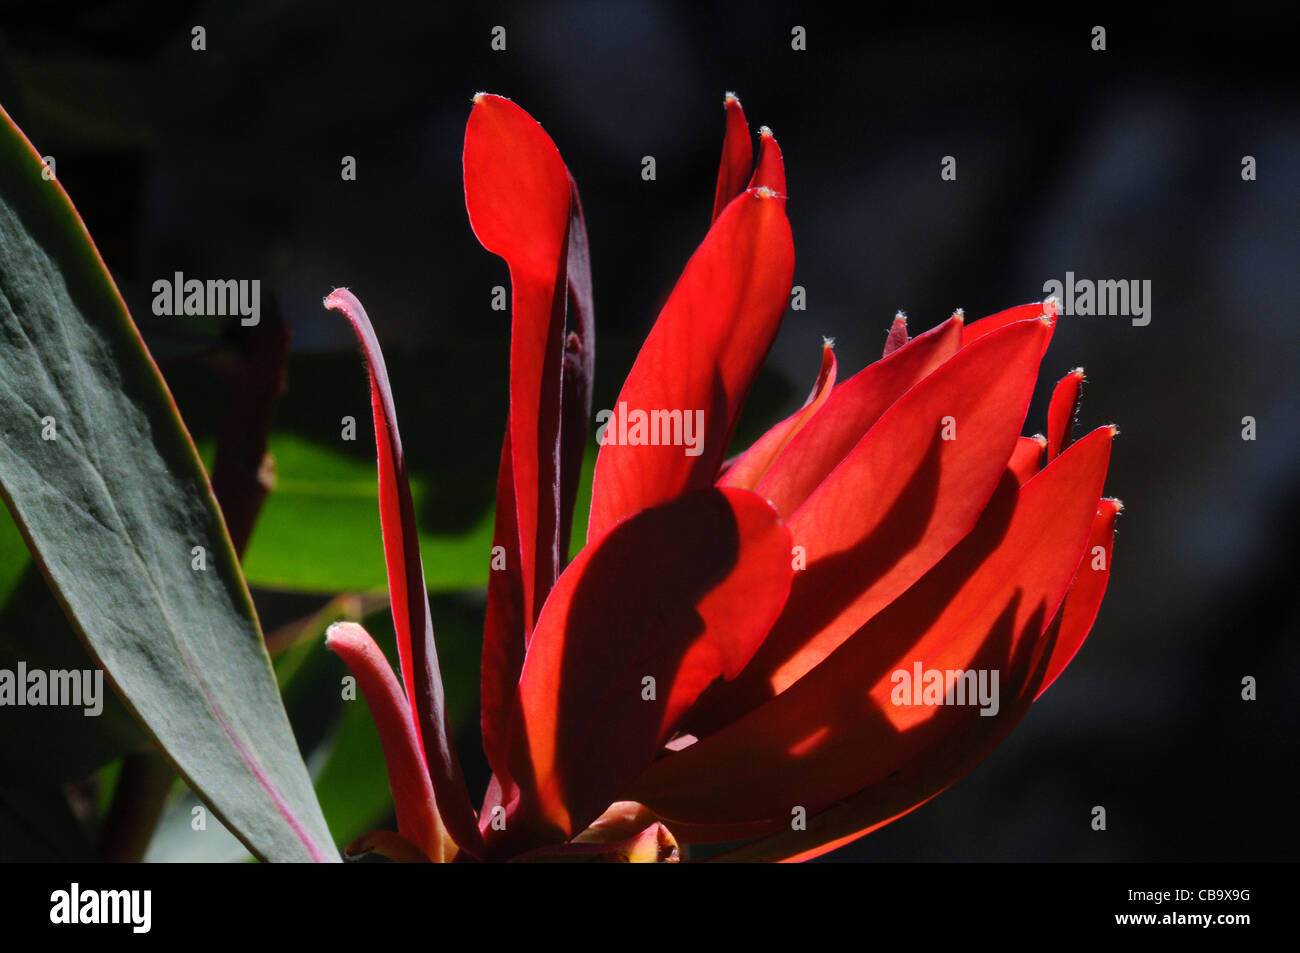 Iluminación posterior, mostrando la nueva temporada del rojo brillante, Protea hojas nuevas Foto de stock